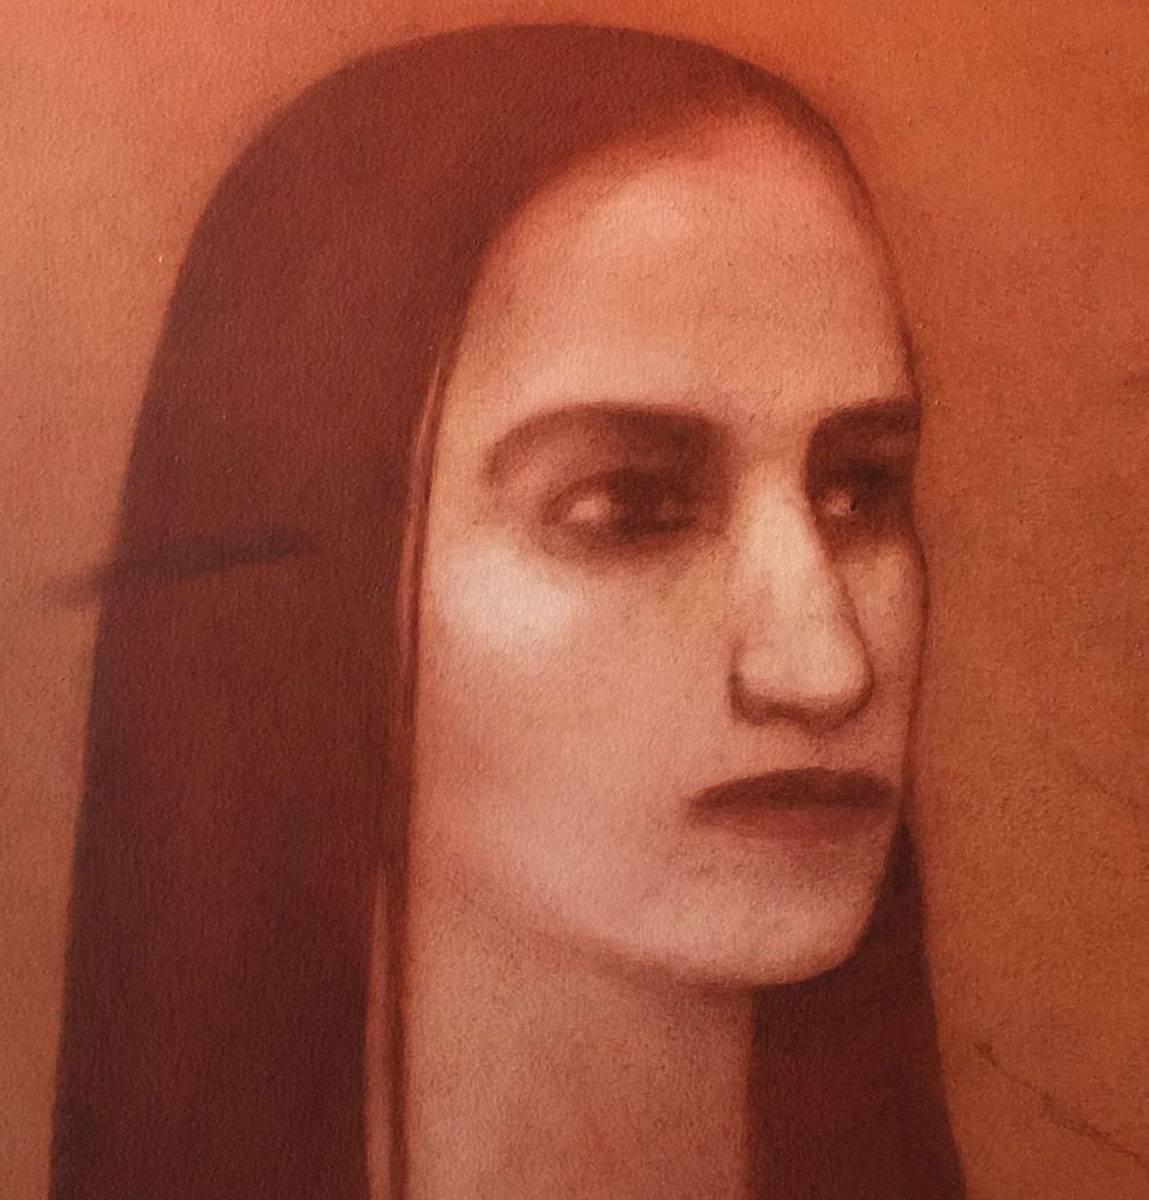 Woman mit langem Haar, ruhiger Augenhöhe, figurativ, rot,braun von zeitgenössischer Künstlerin – Painting von Chandra Bhattacharya